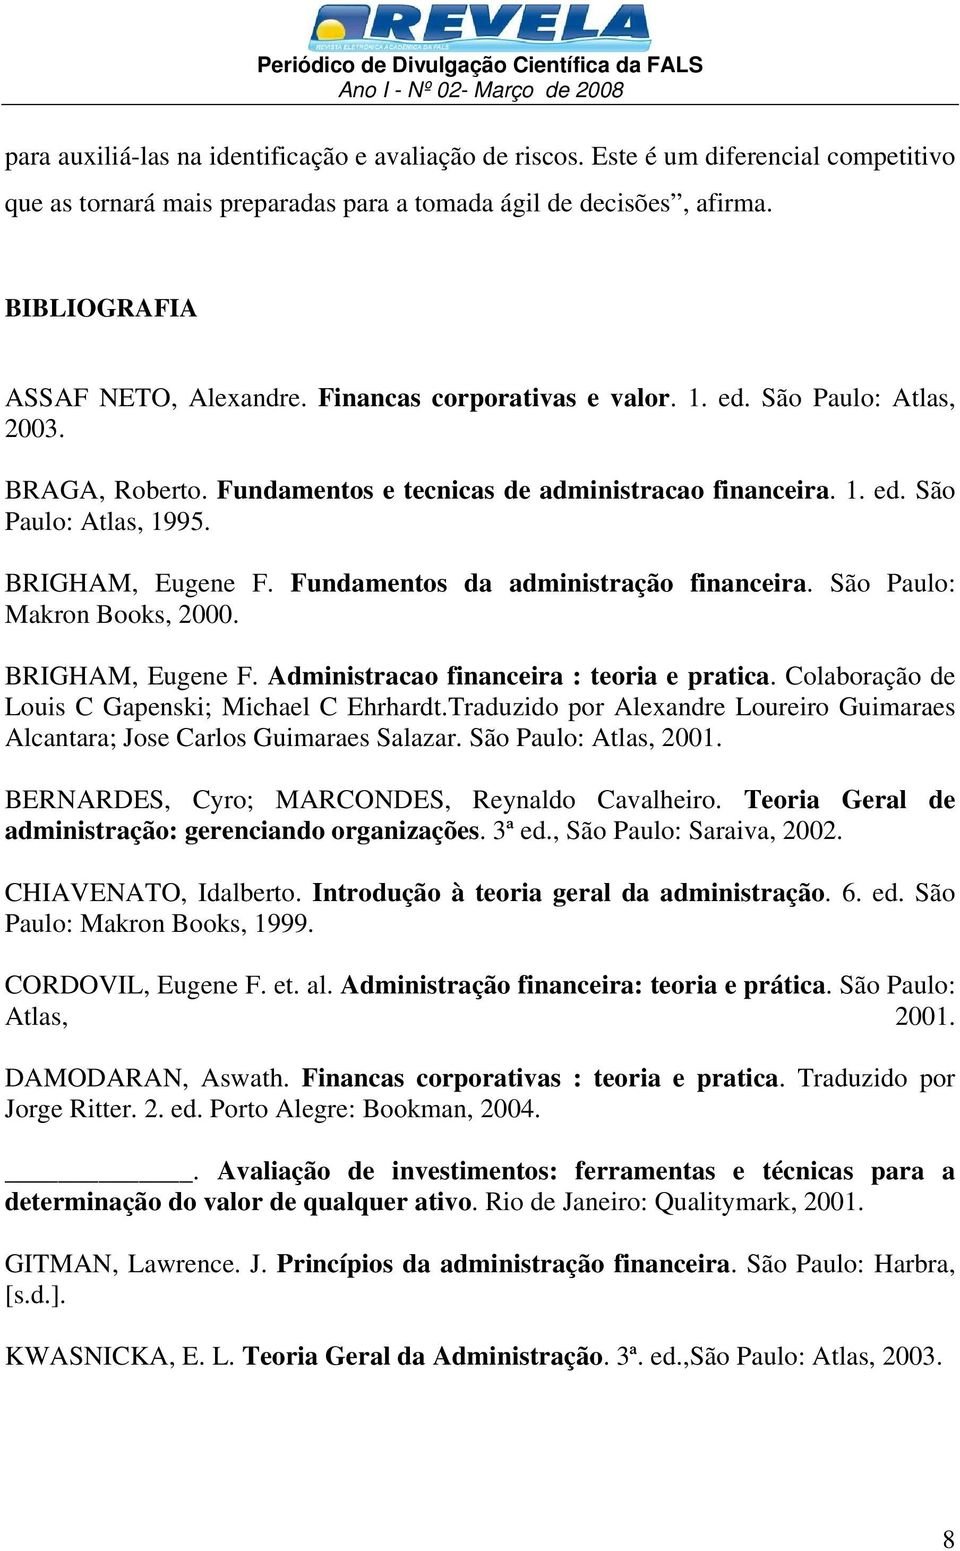 Fundamentos da administração financeira. São Paulo: Makron Books, 2000. BRIGHAM, Eugene F. Administracao financeira : teoria e pratica. Colaboração de Louis C Gapenski; Michael C Ehrhardt.